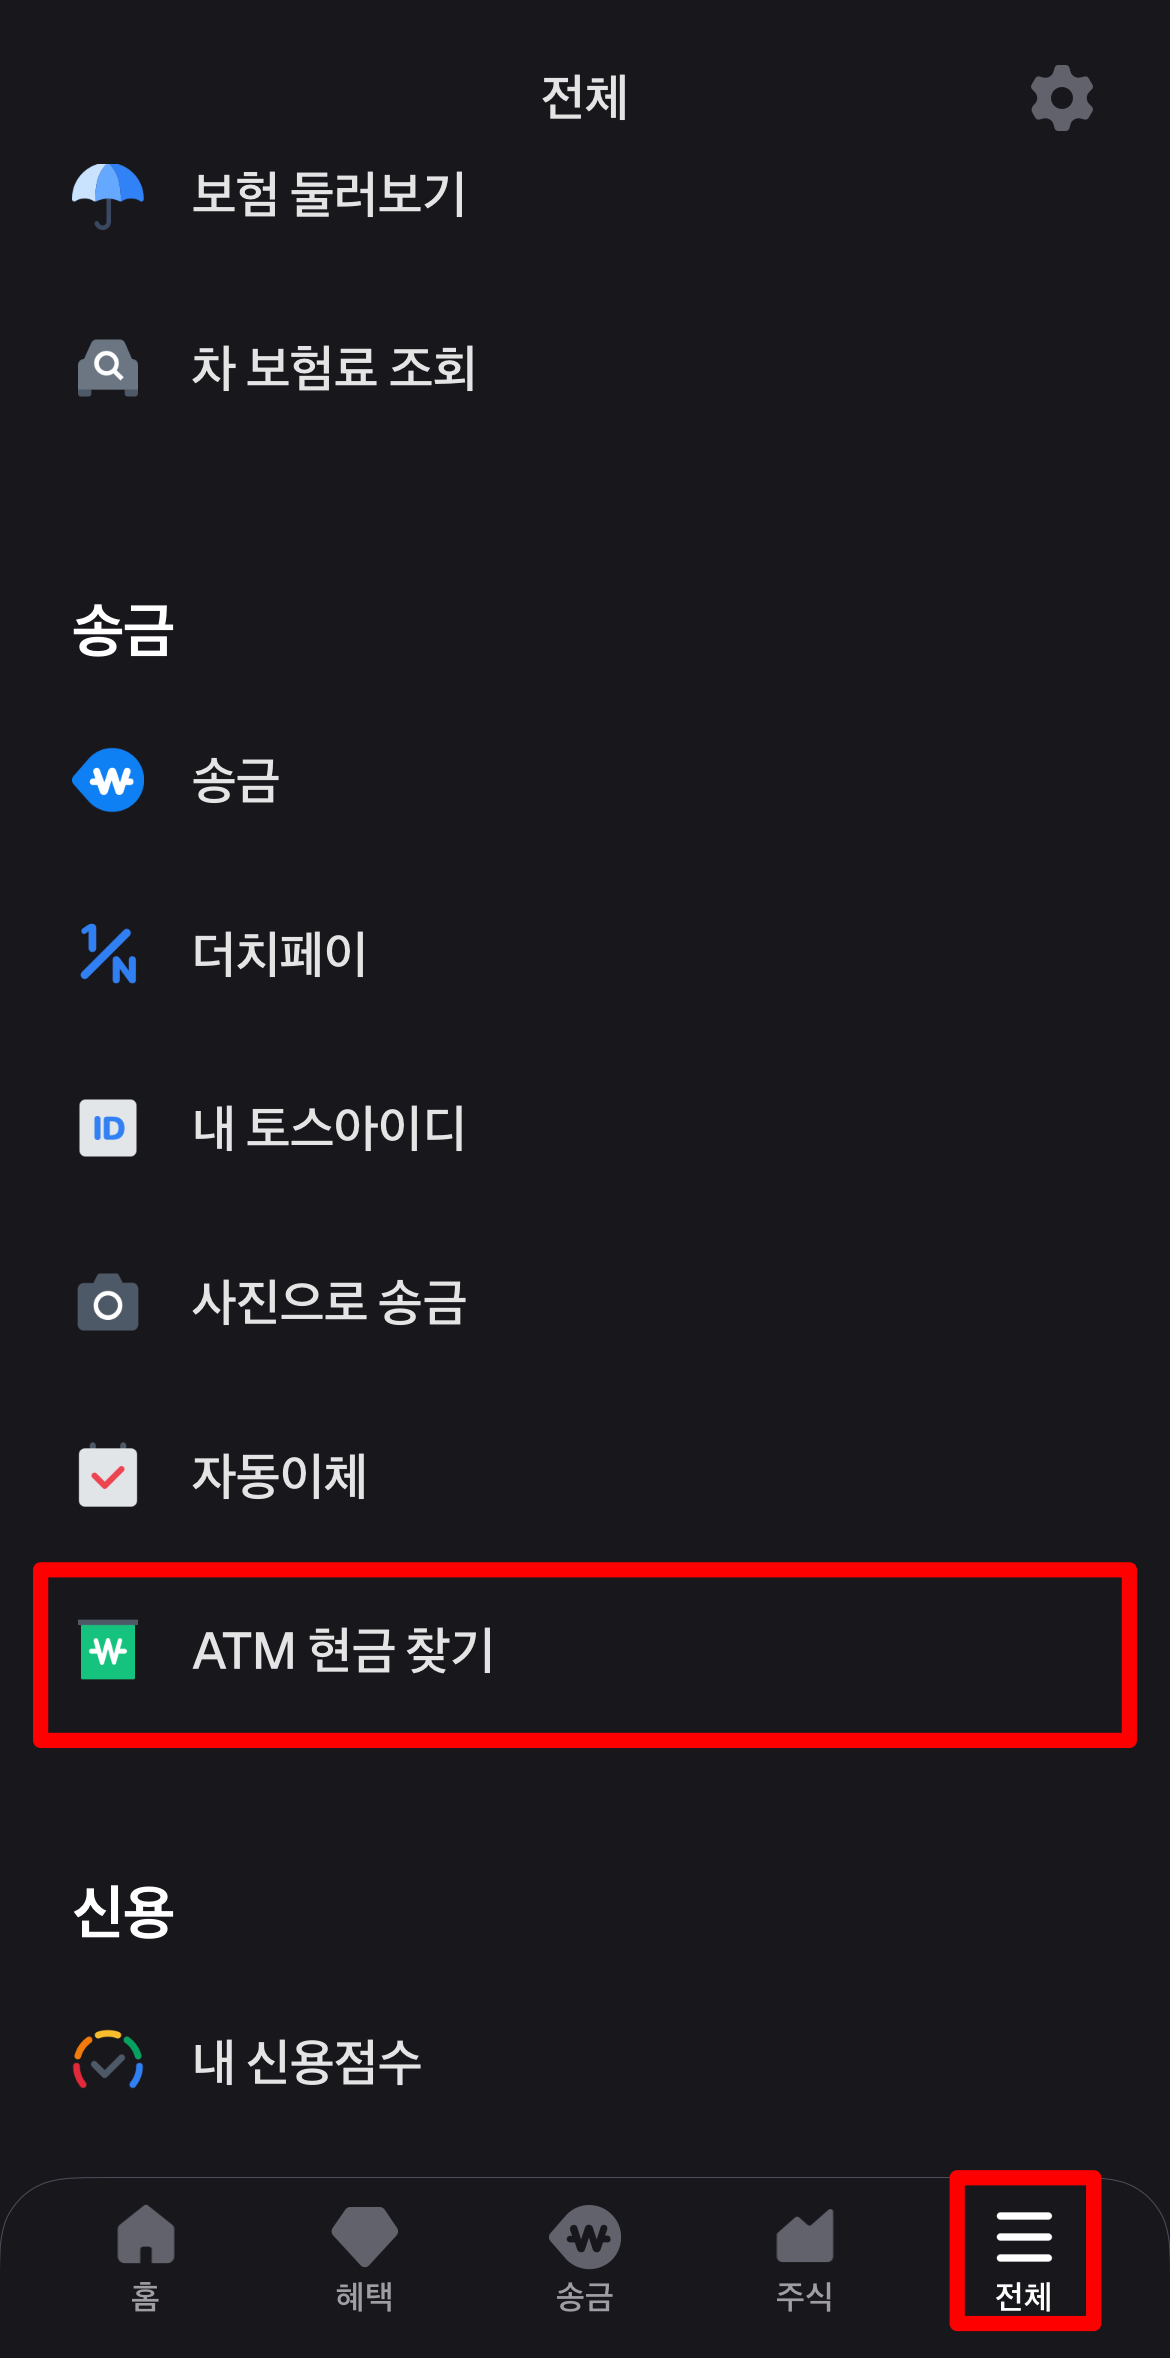 토스 앱에서 ATM 현금 찾기 접속